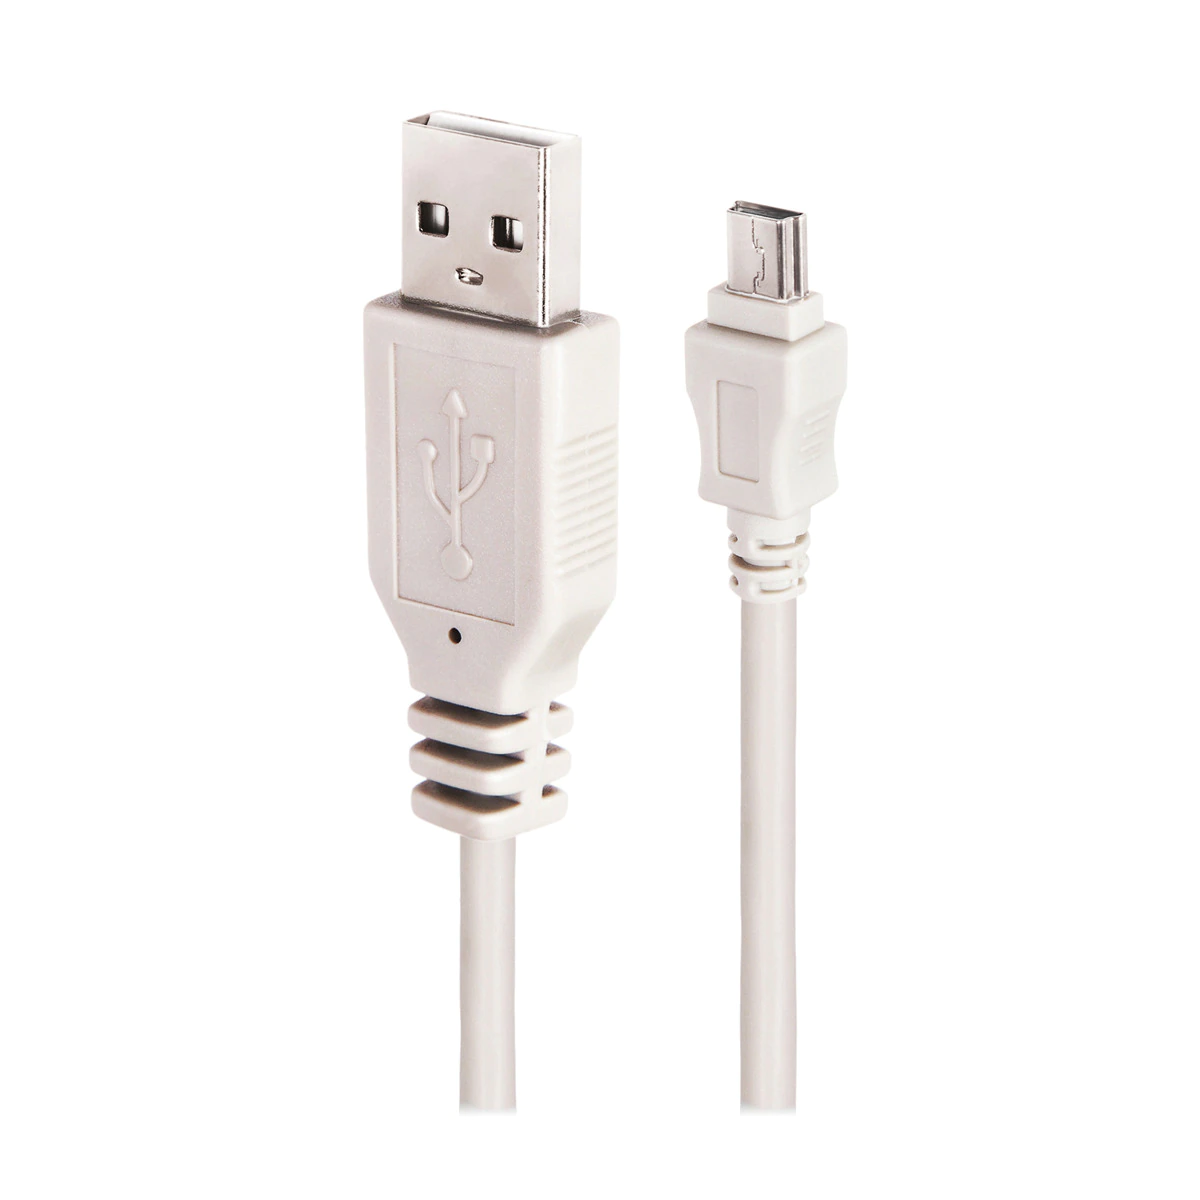 Cable Prolinx USB 2.0 (Tipo A) a MiniUSB (Tipo B) de 1,5 metros